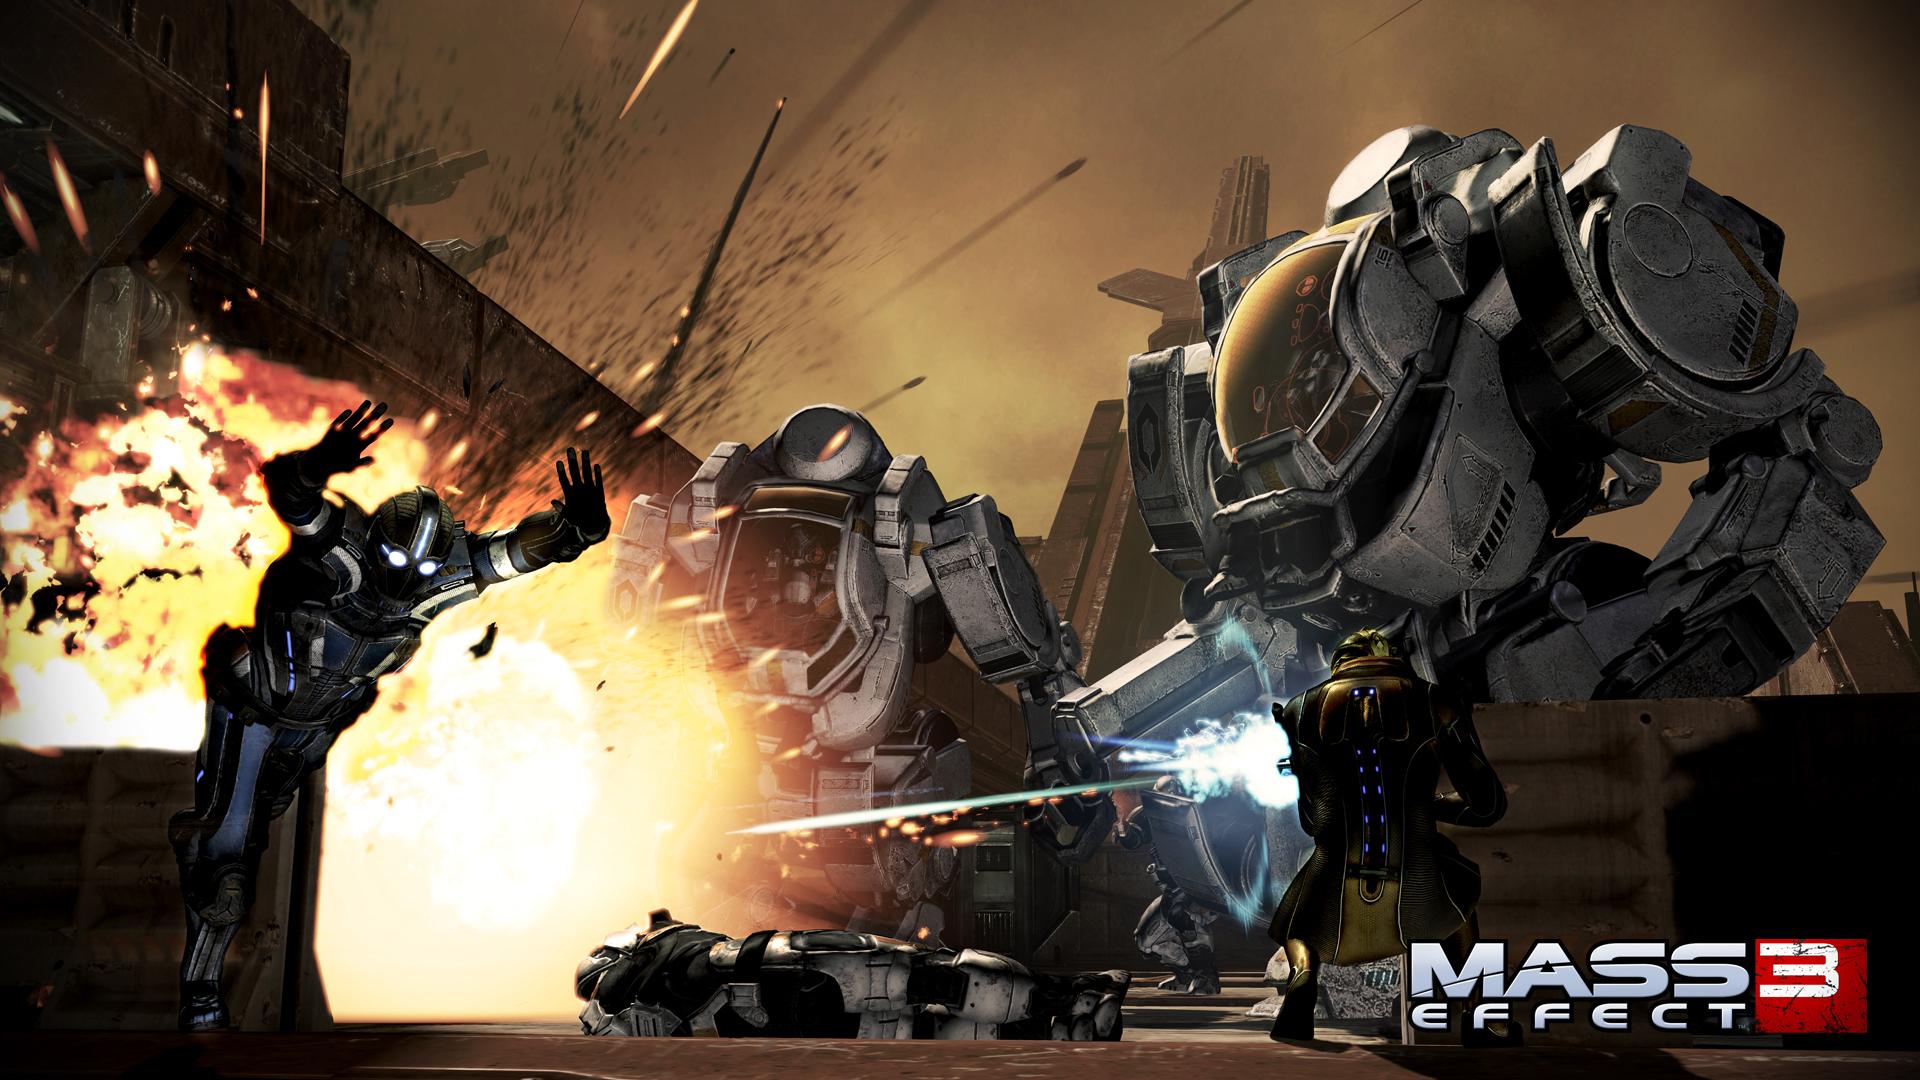 Cool Mass Effect Wallpaper